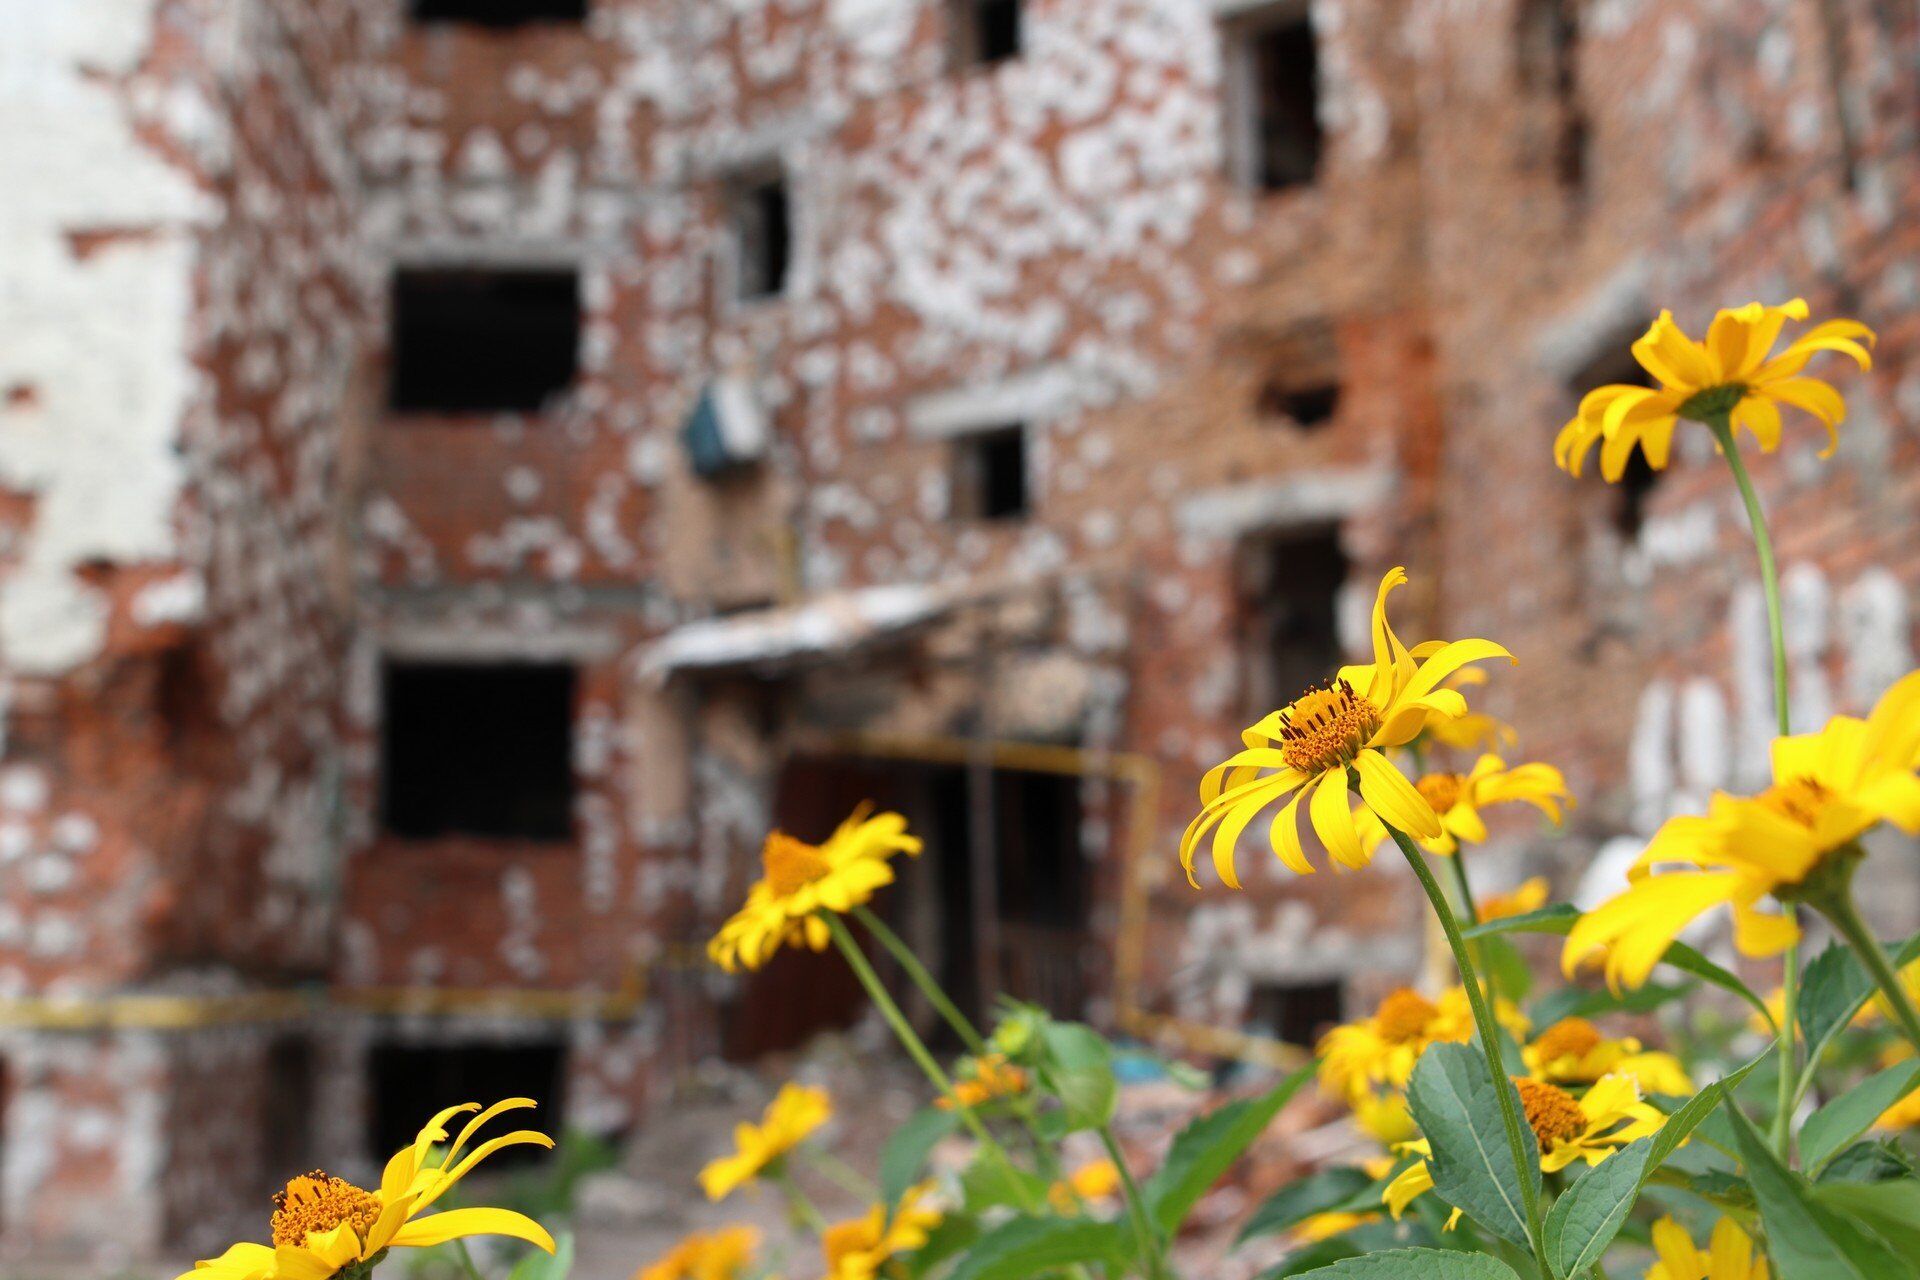 Біля зруйнованої будівлі виросли квіти